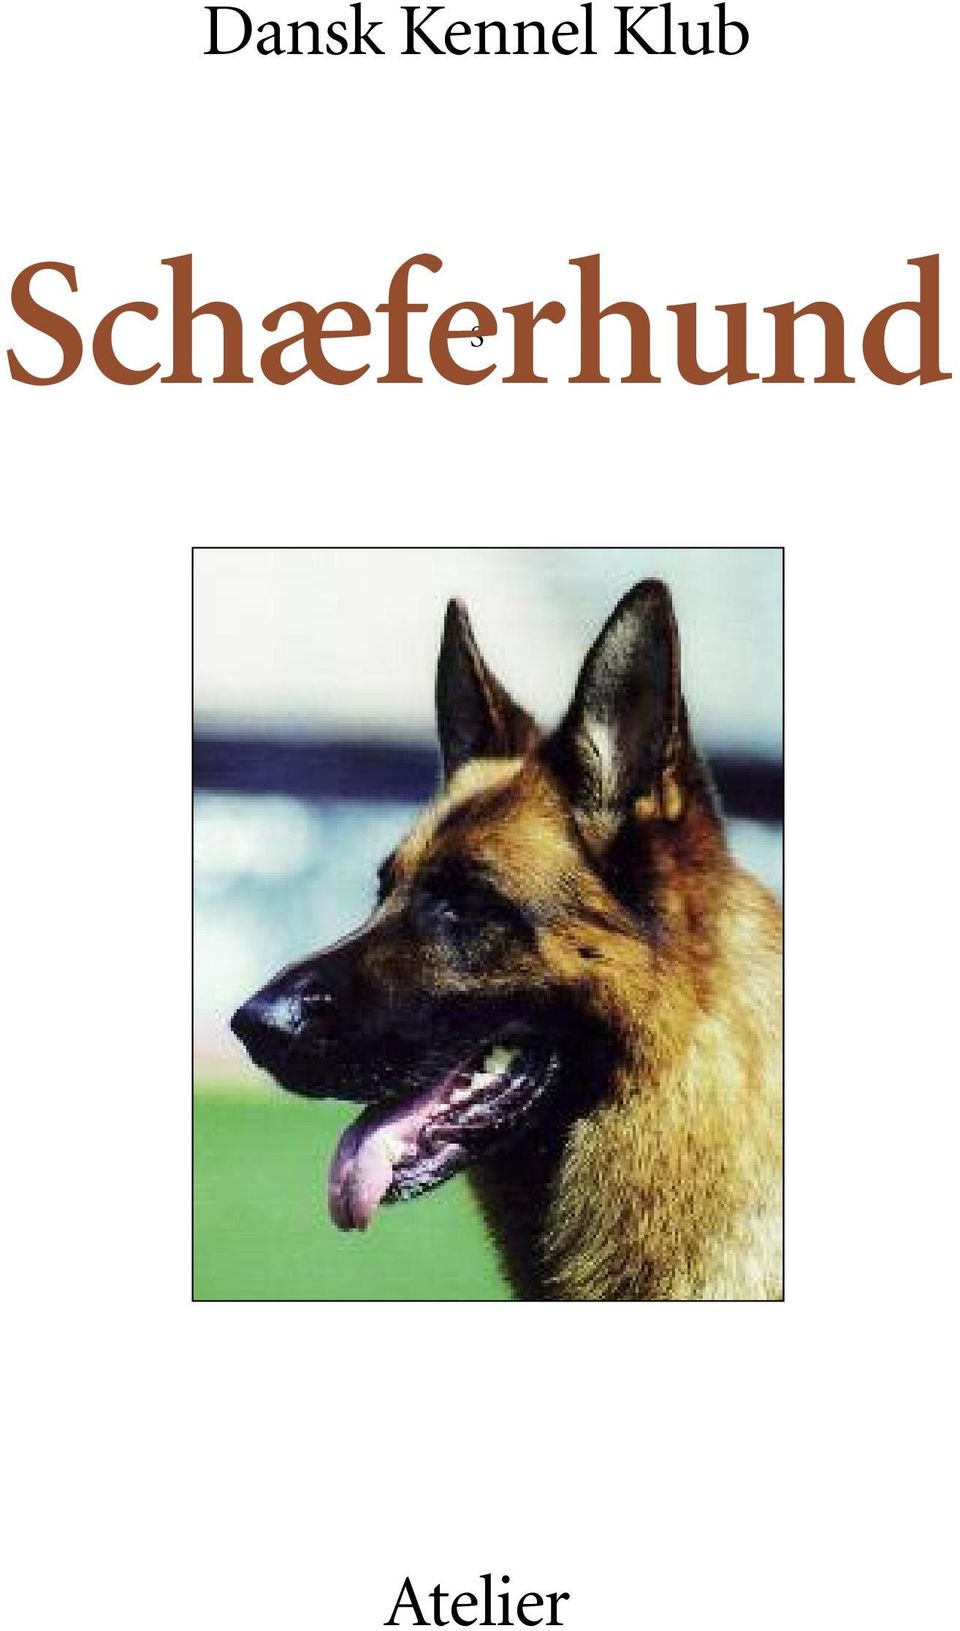 Schæferhund. Dansk Kennel Klub Schæferhund Atelier. Dansk Kennel ...